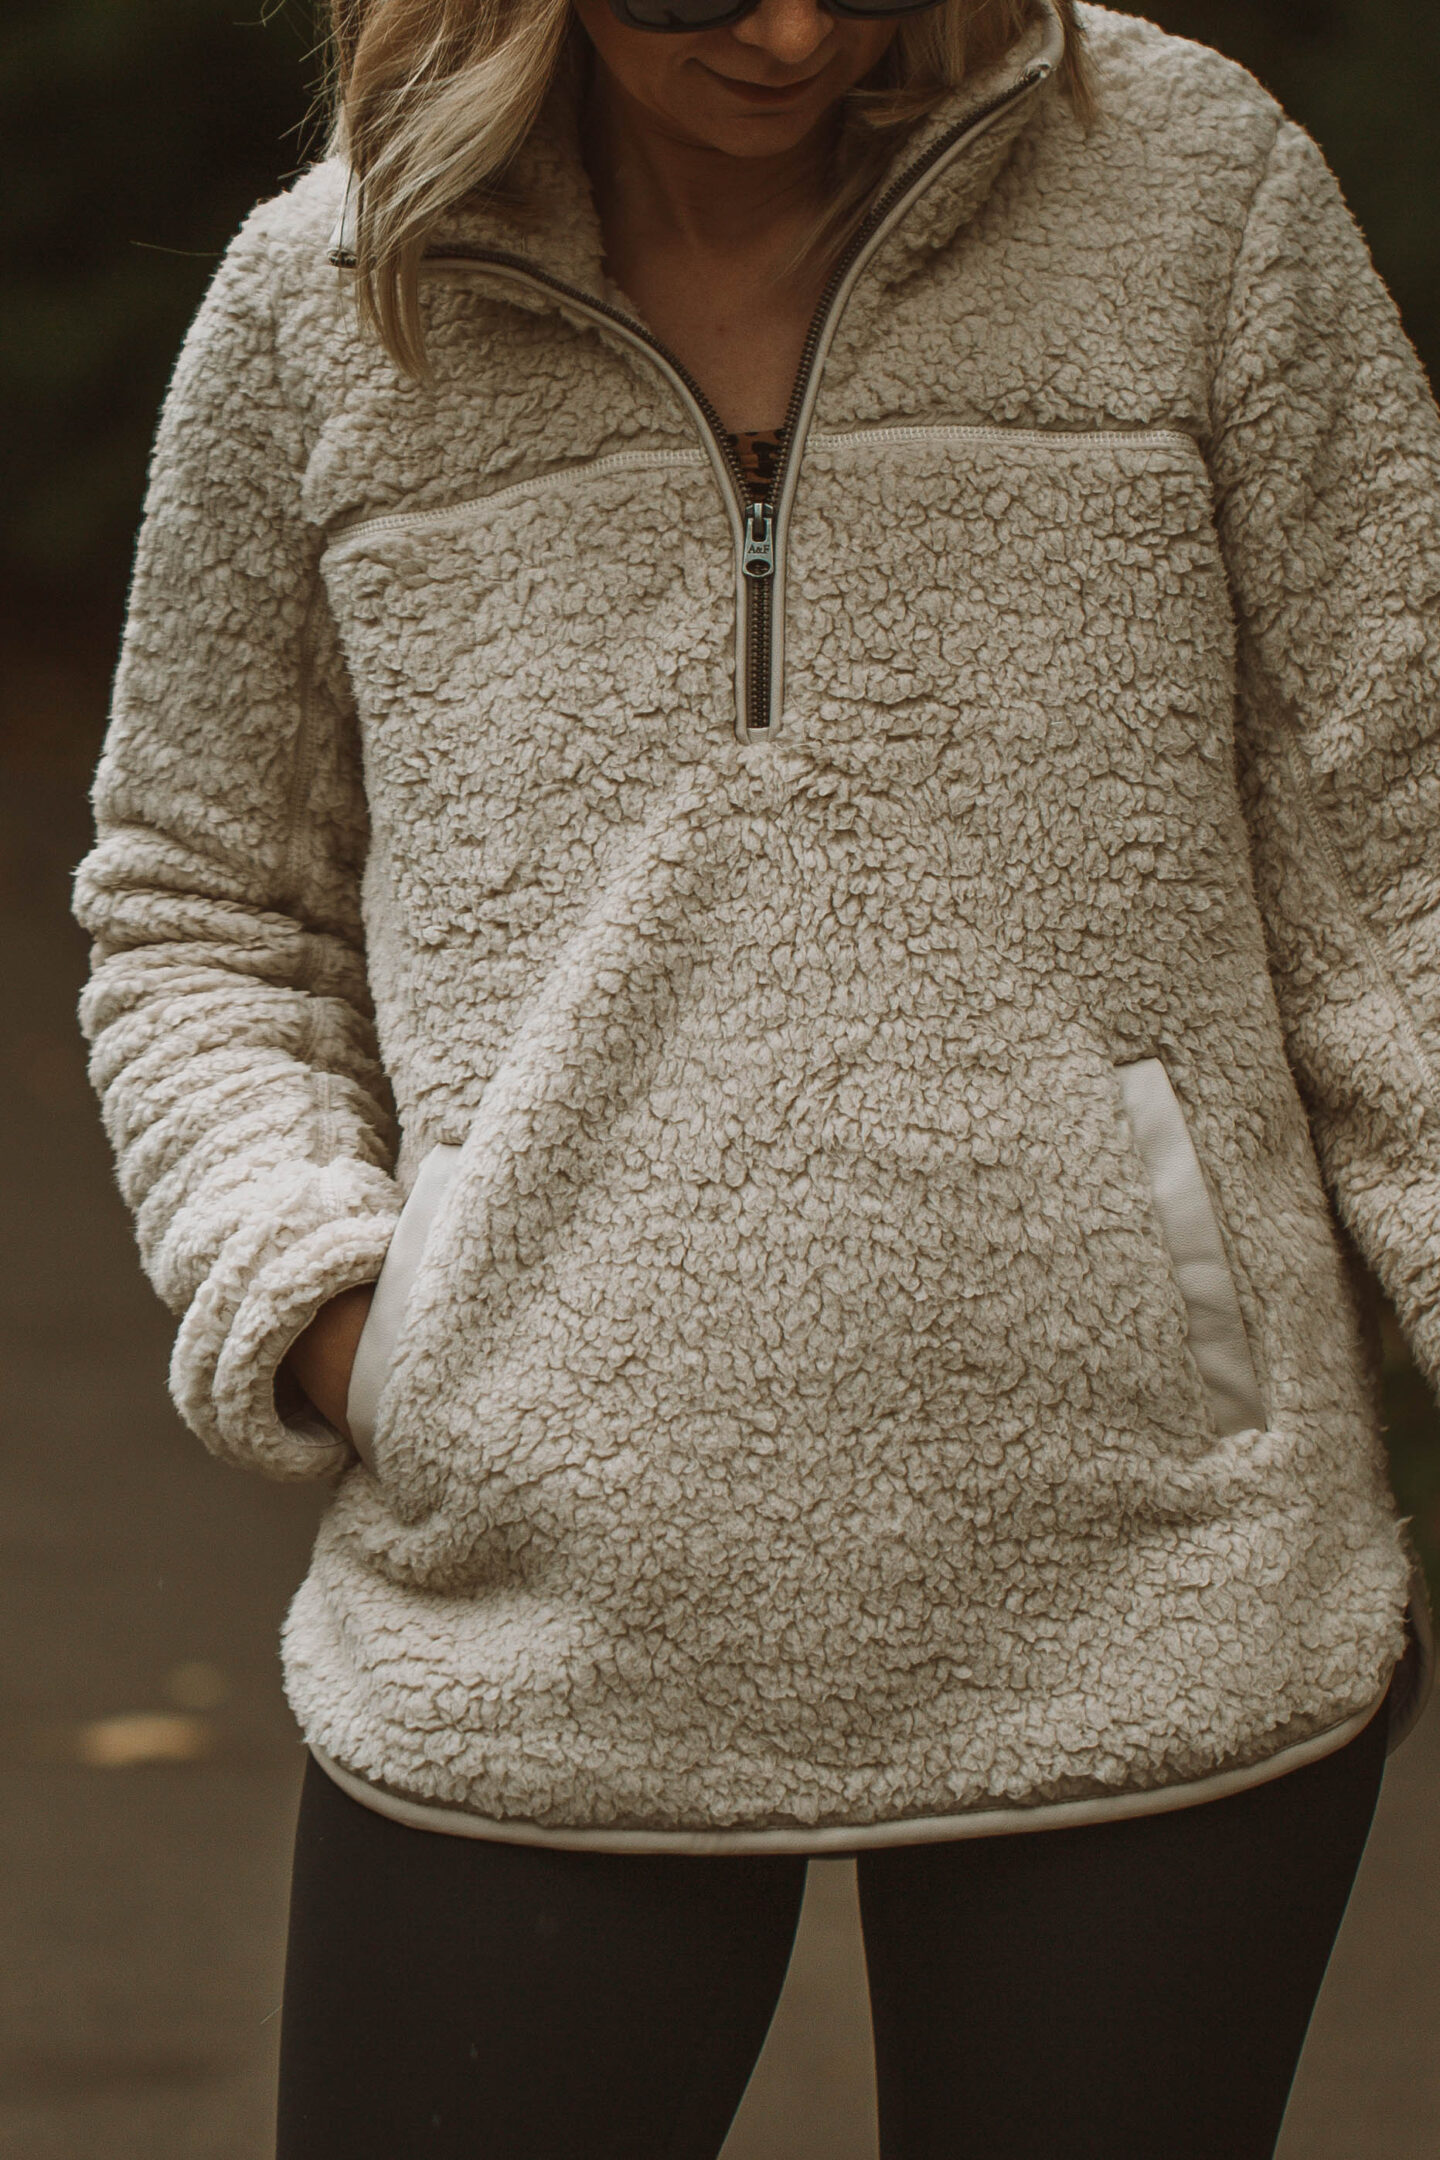 lululemon align legging review, sherpa fleece pullover